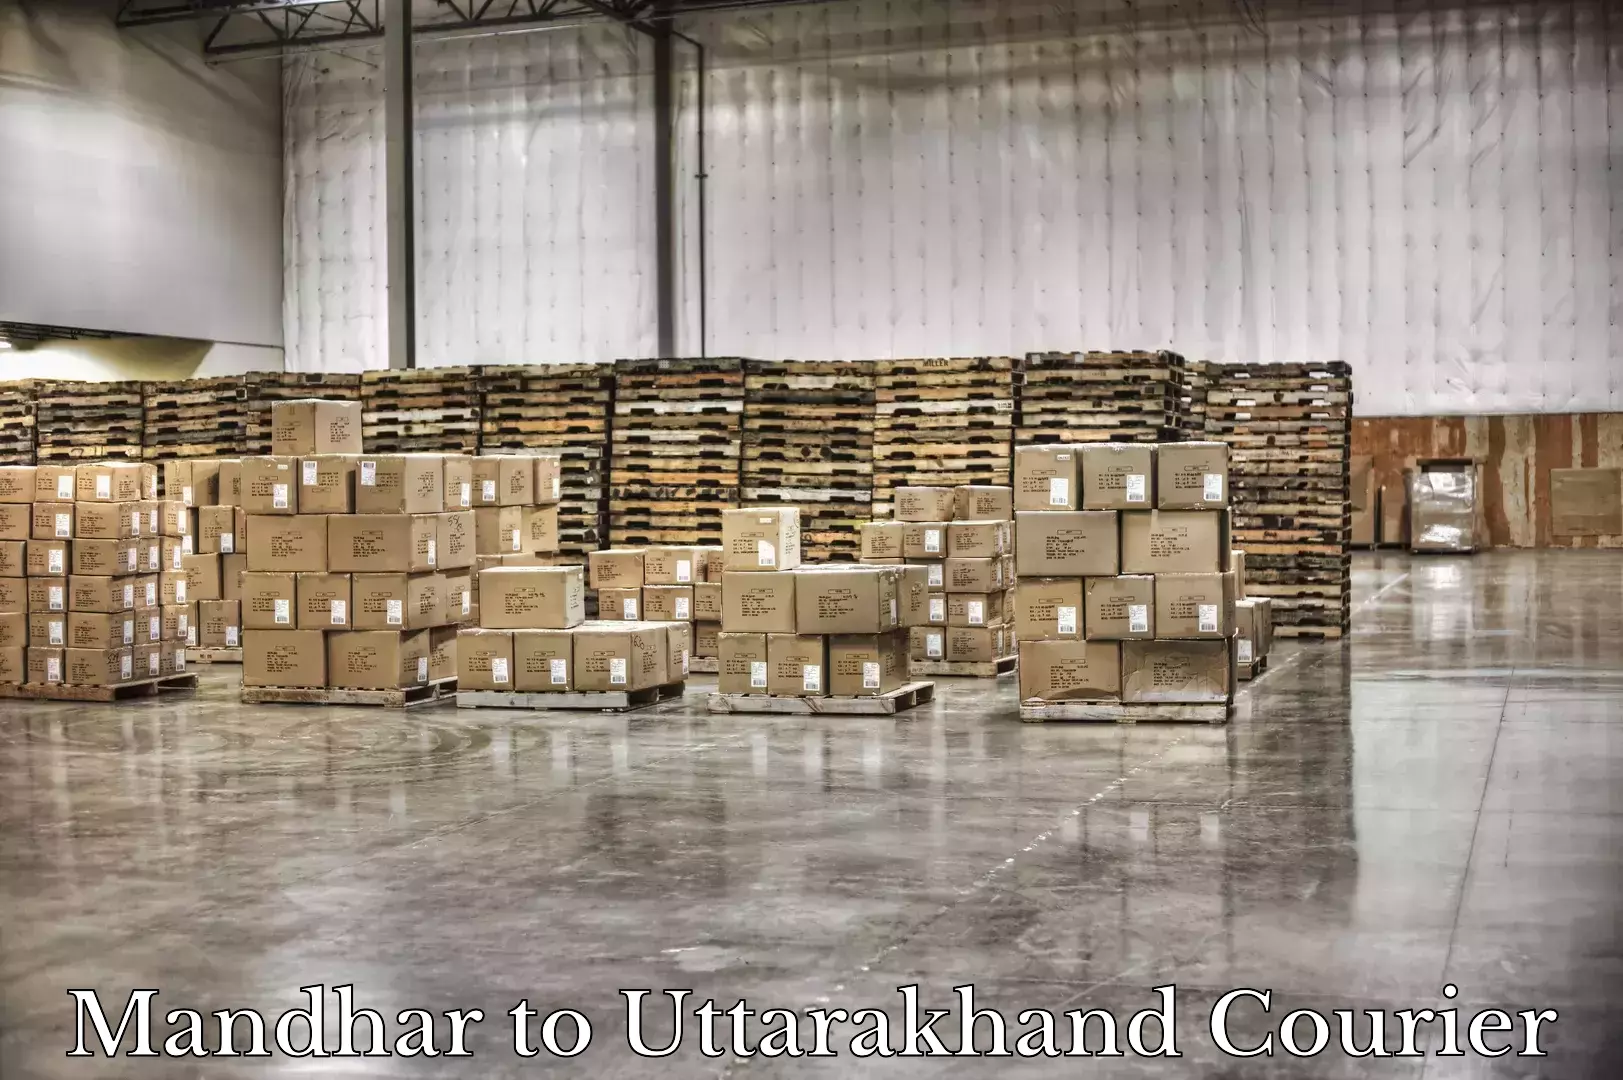 Baggage shipping experts Mandhar to Chamoli